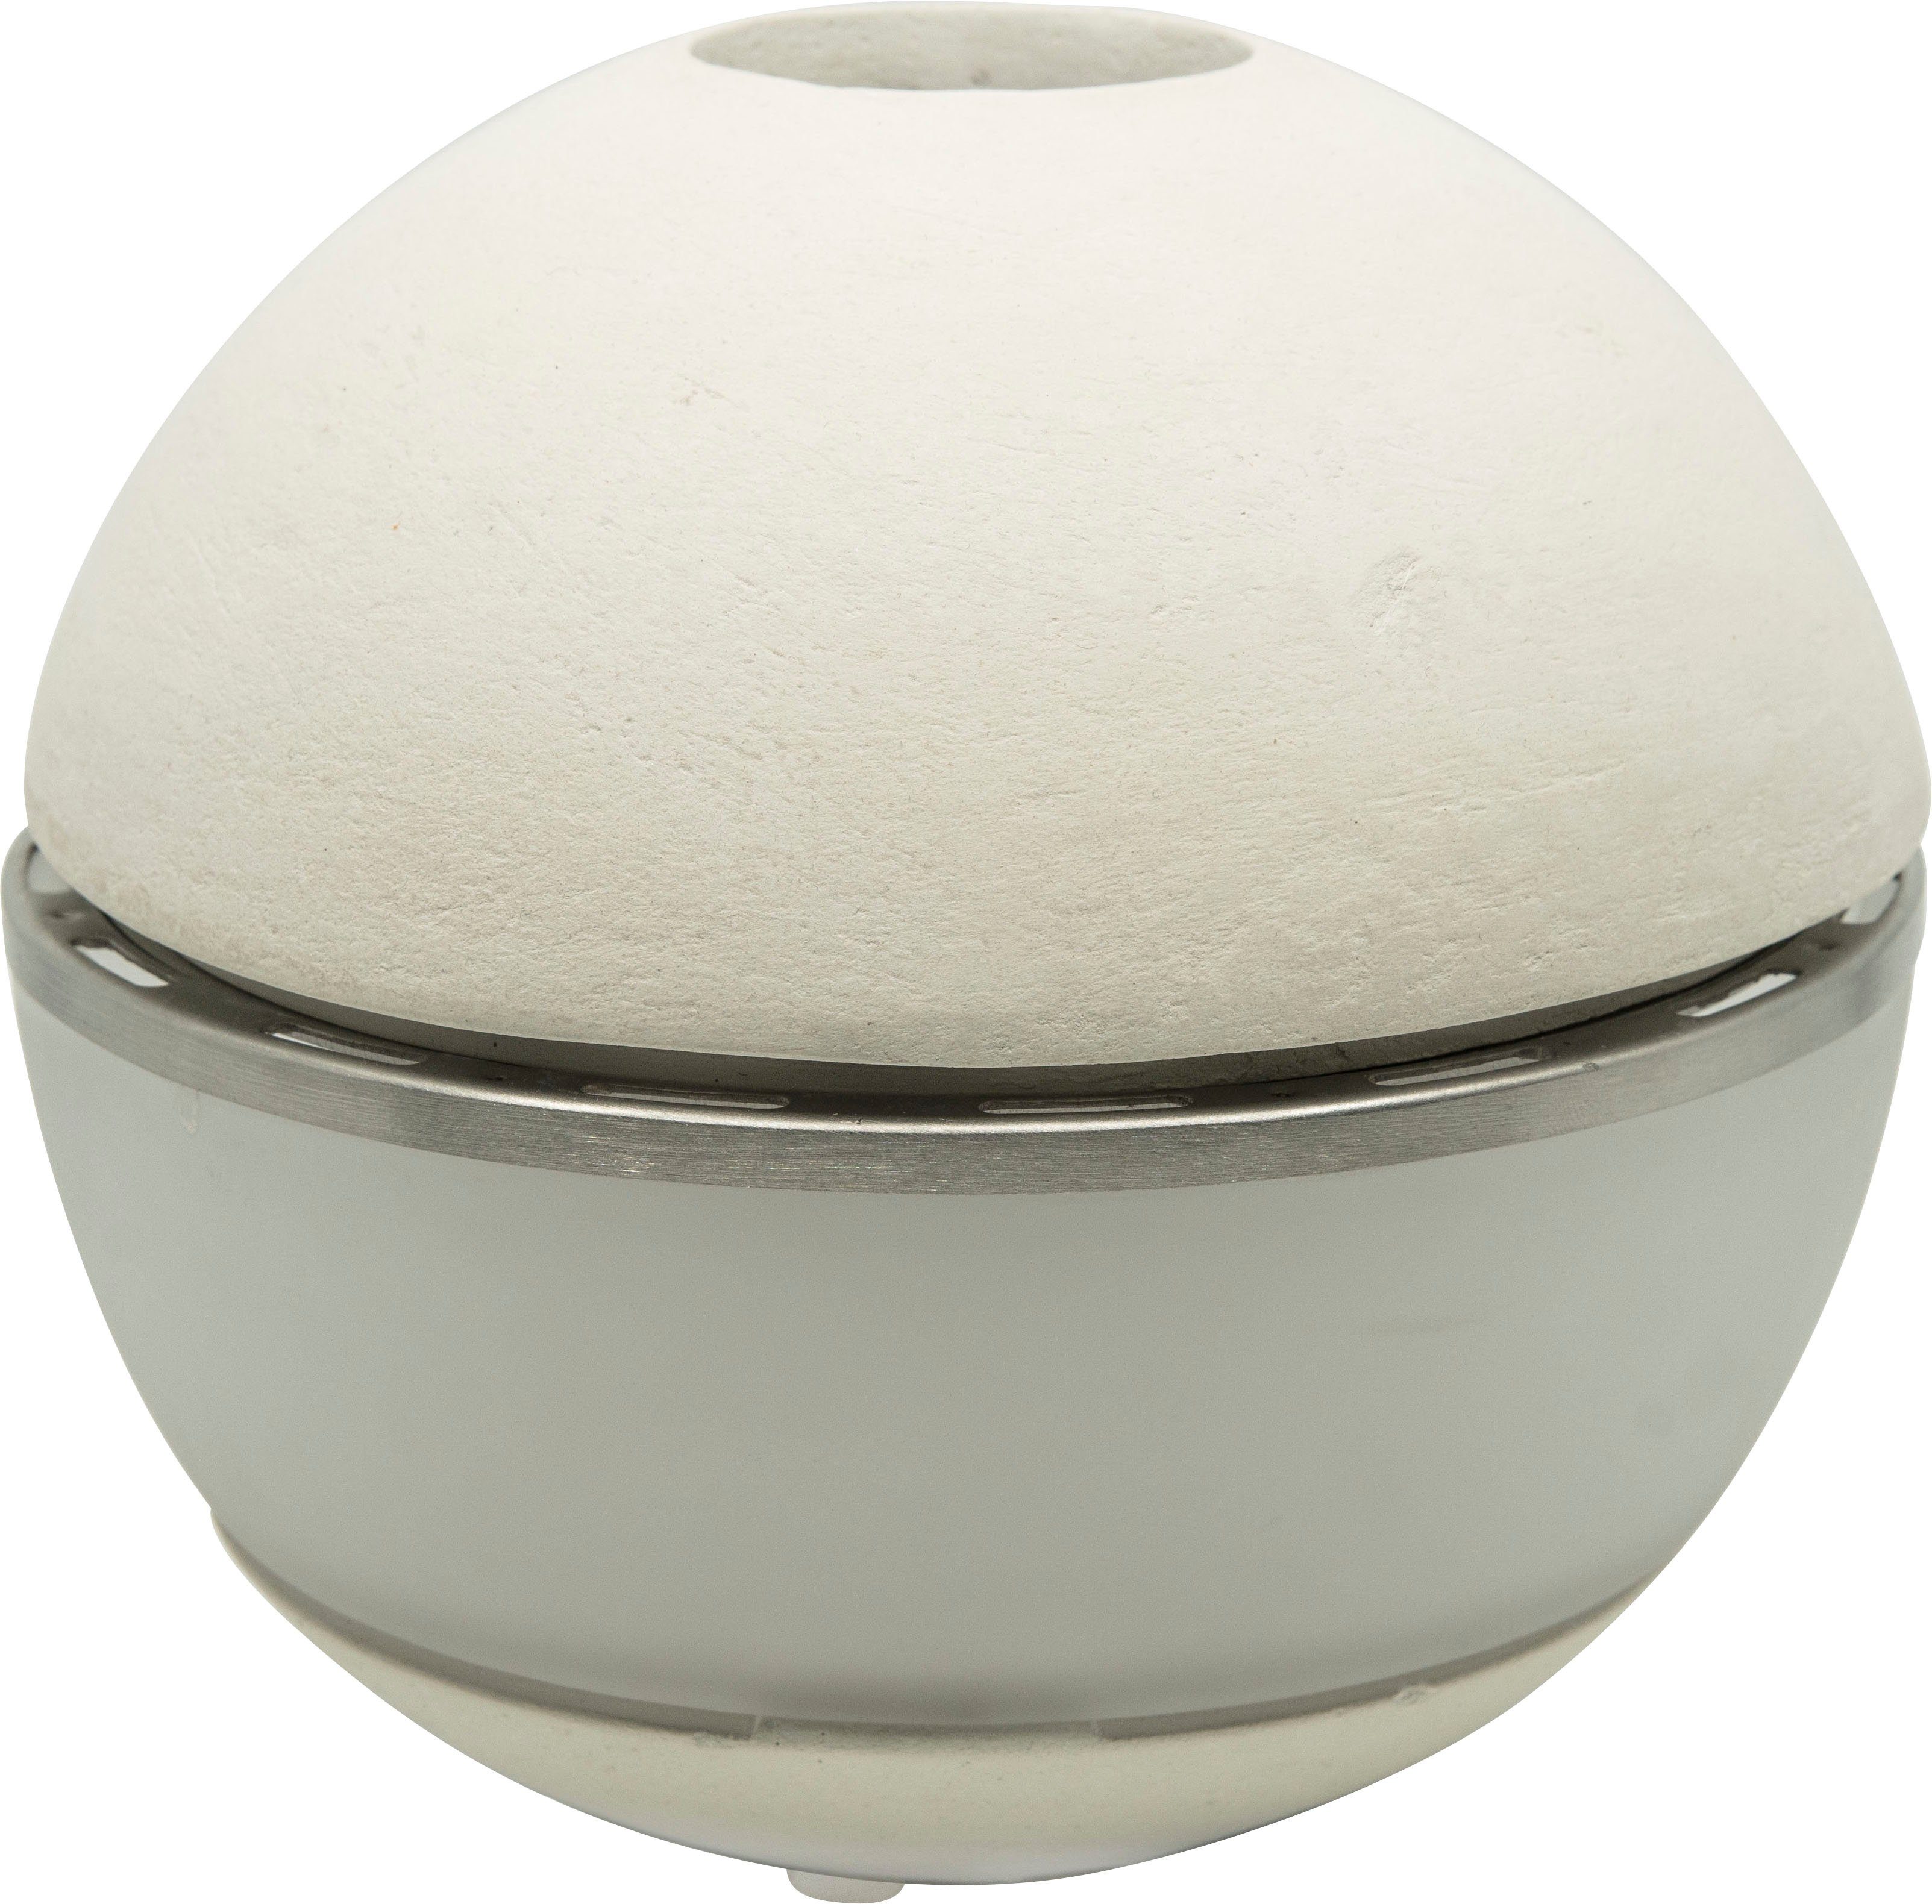 hecht international Duftlampe Salzofen SALINO, weiß ØxH: 17,5x16,5 cm